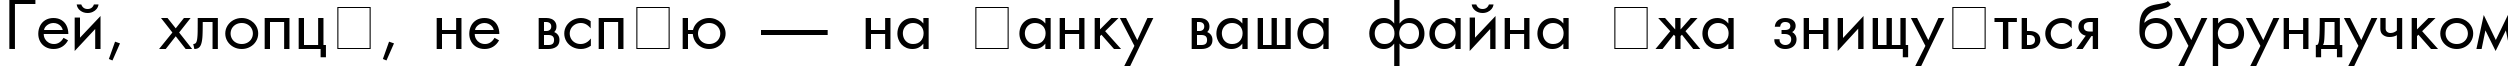 Пример написания шрифтом AG_Futura текста на украинском